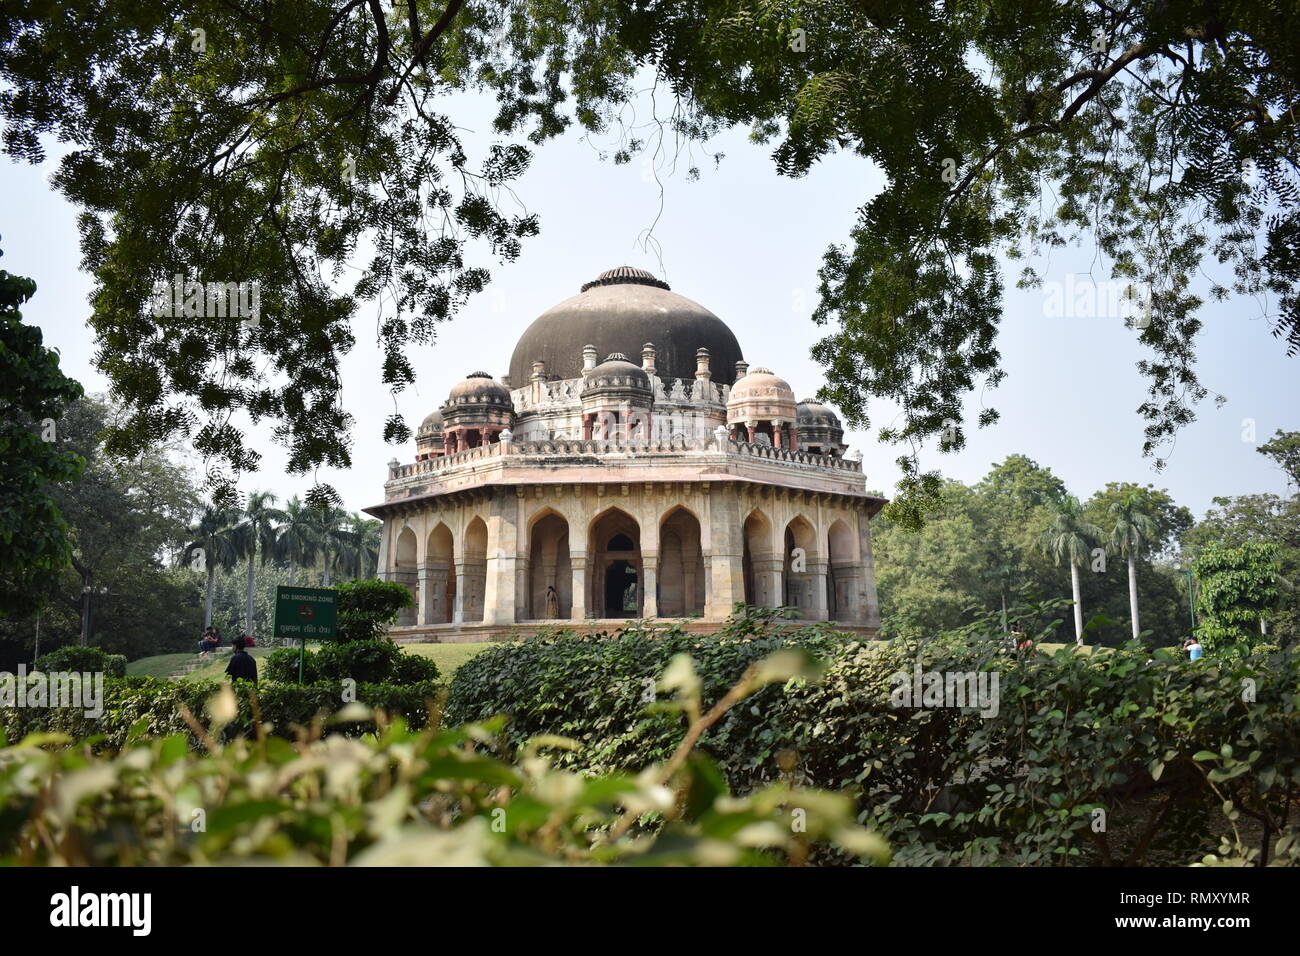 Das ist die wunderschöne Szene der Lodhi Gärten in Delhi die Hauptstadt Indiens. Es ist das Grab des Sikandar Lodi. Es ist ein prächtiges Denkmal entfernt. Stockfoto